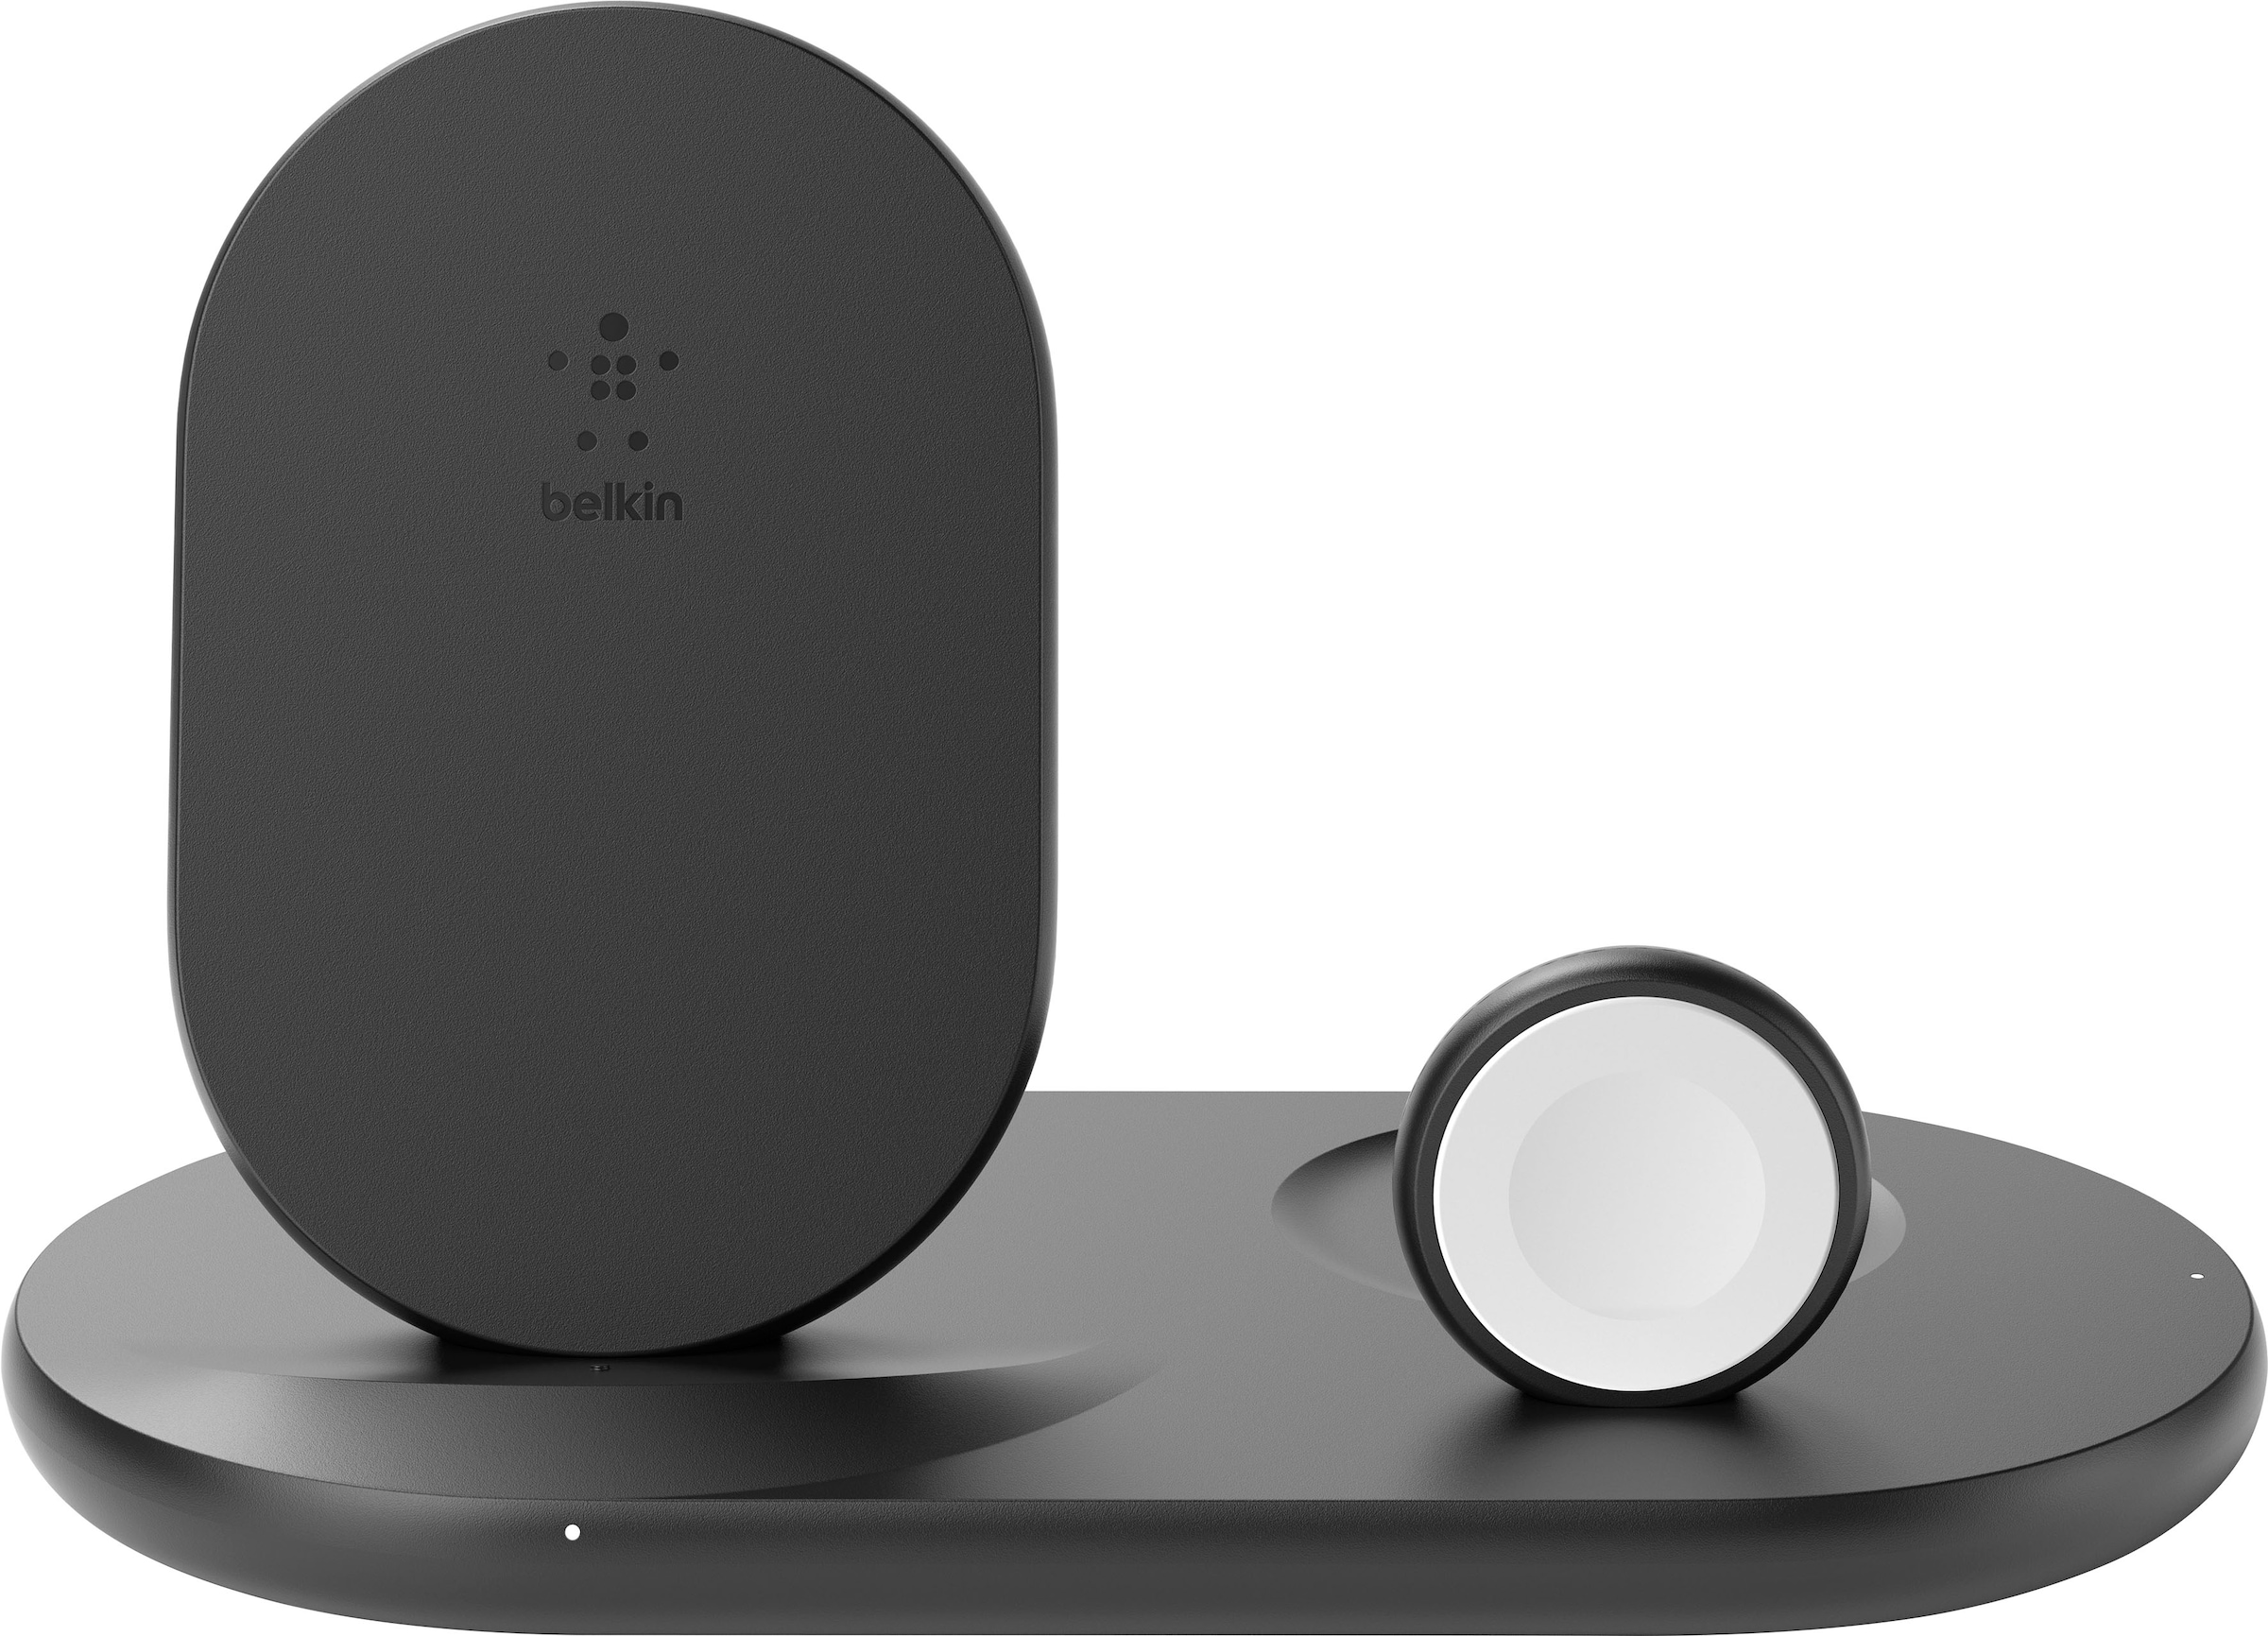 Belkin Wireless Charger »Belkin drahtloses 3-in-1 Ladegerät für iPhone, Apple Watch und AirPods«, (kompatibel für fast alle Apple iPhone, Apple Watch und AirPods), inkl. Netzteil, Wireless Ladestation/Ladeständer